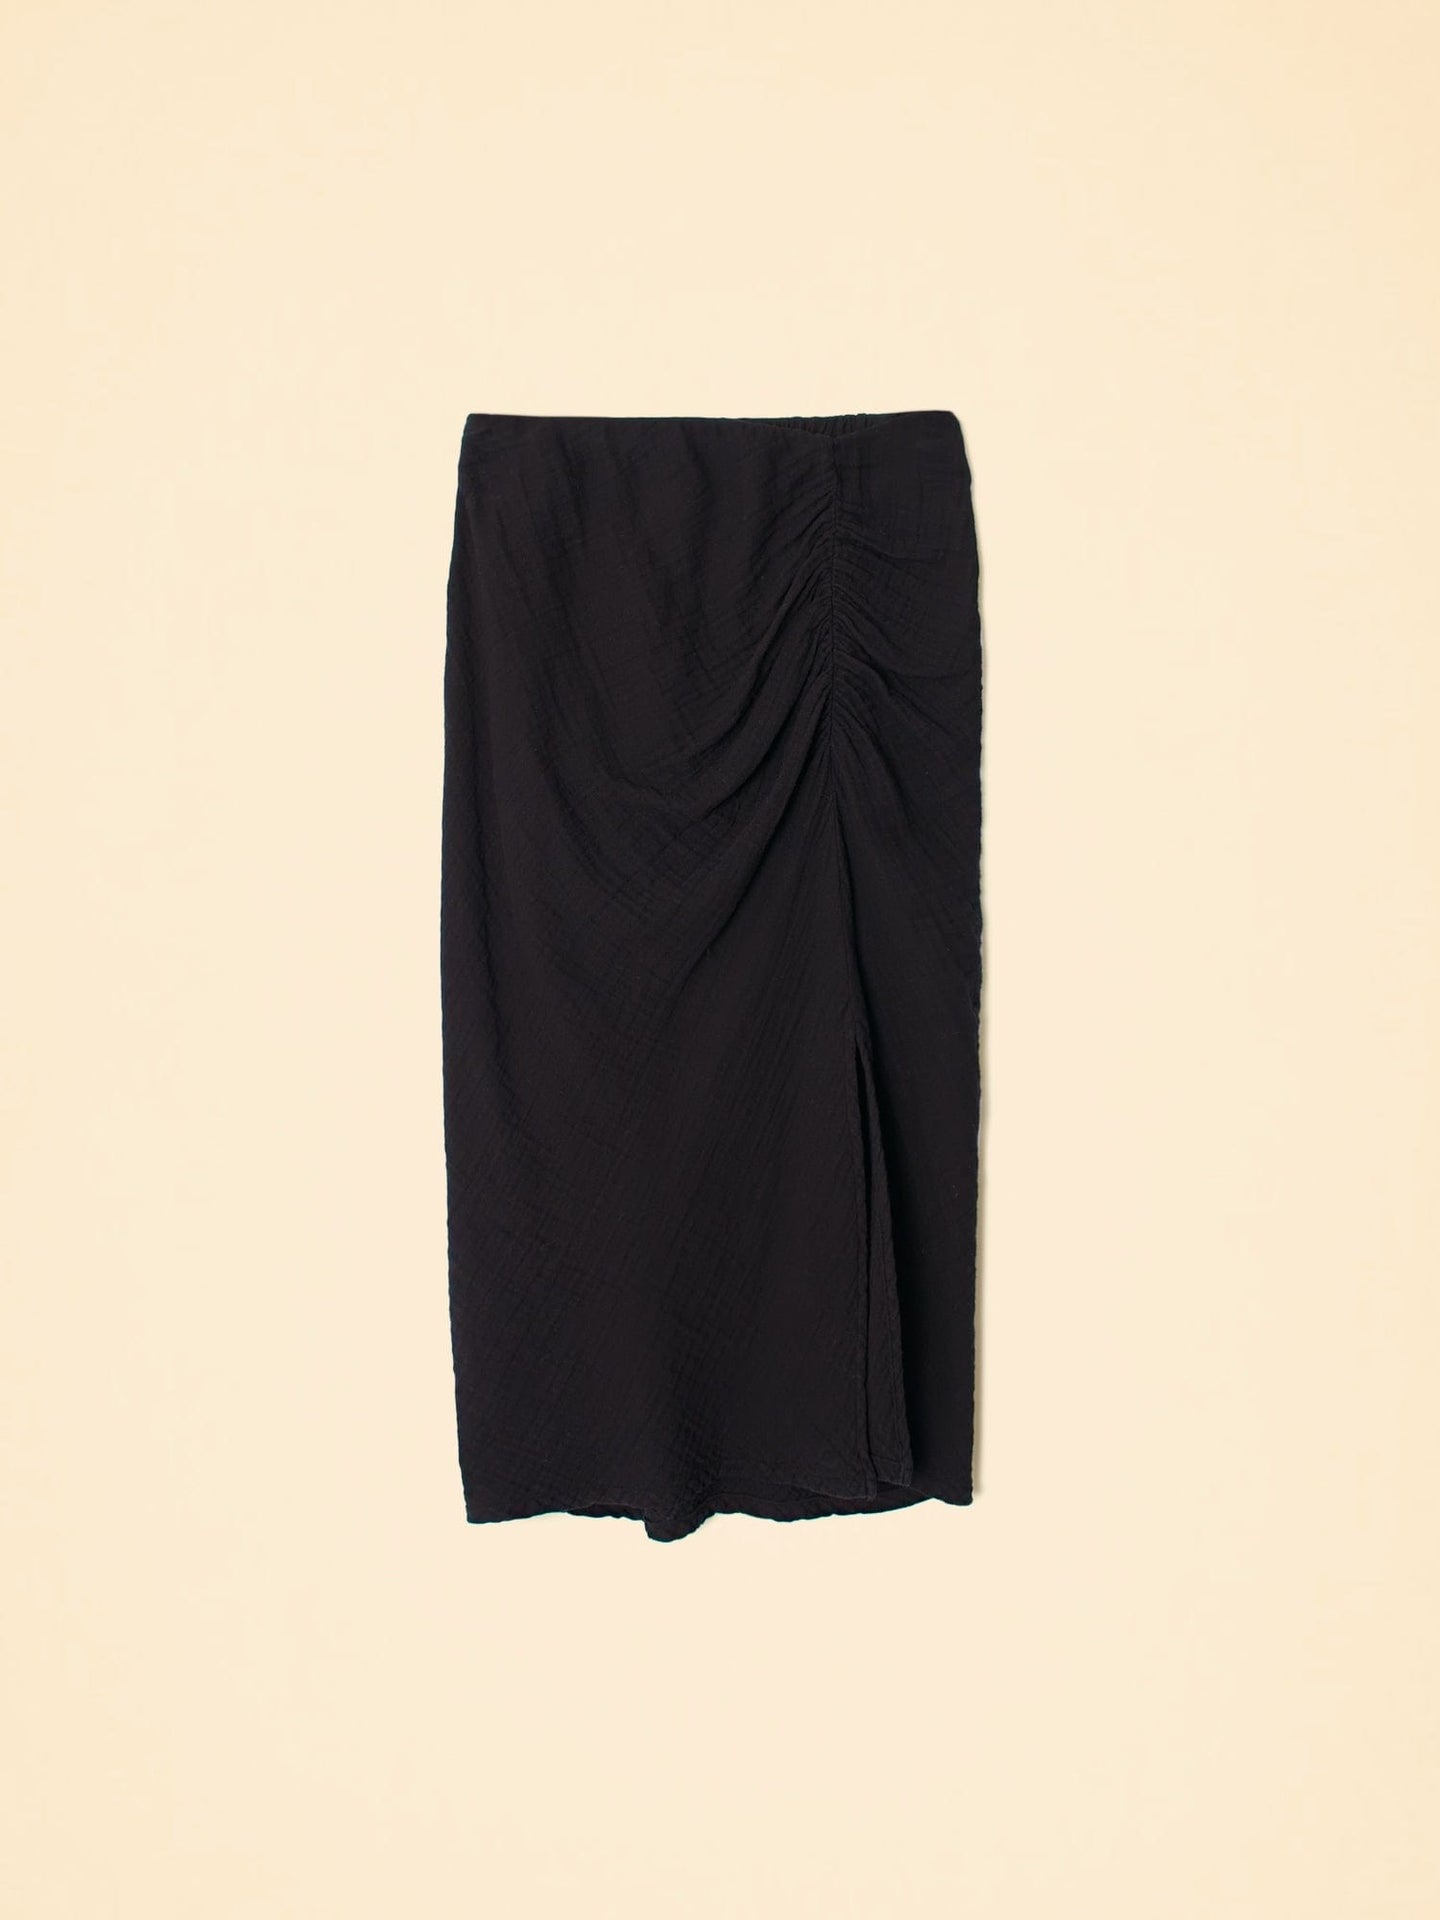 Xirena Skirt Black Scottie Skirt